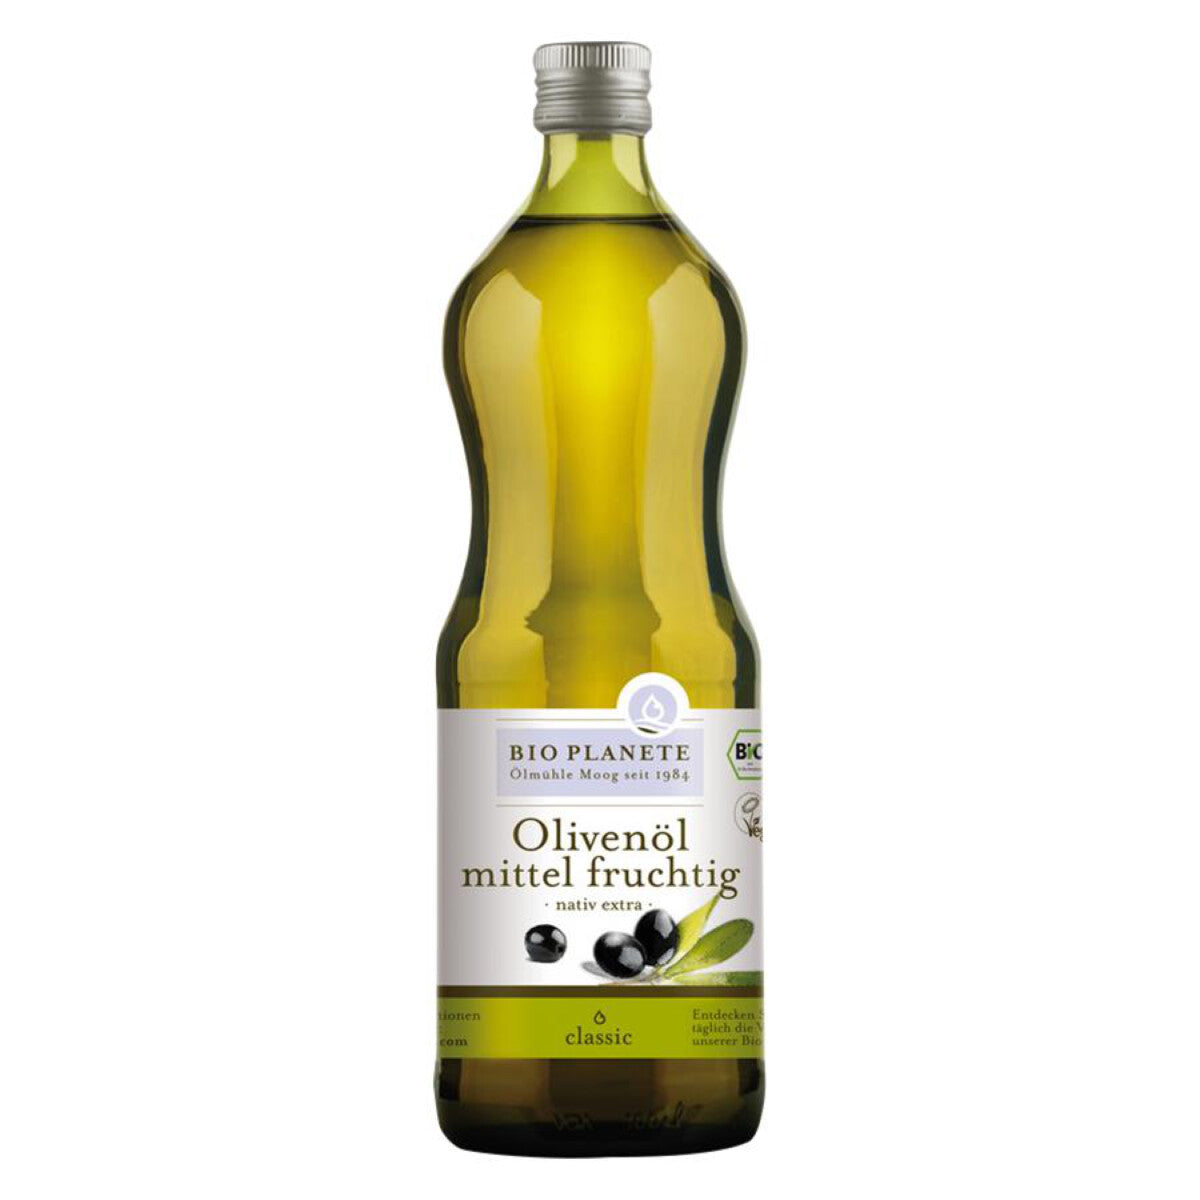 BIO PLANETE Olivenöl mittel fruchtig - 1 l